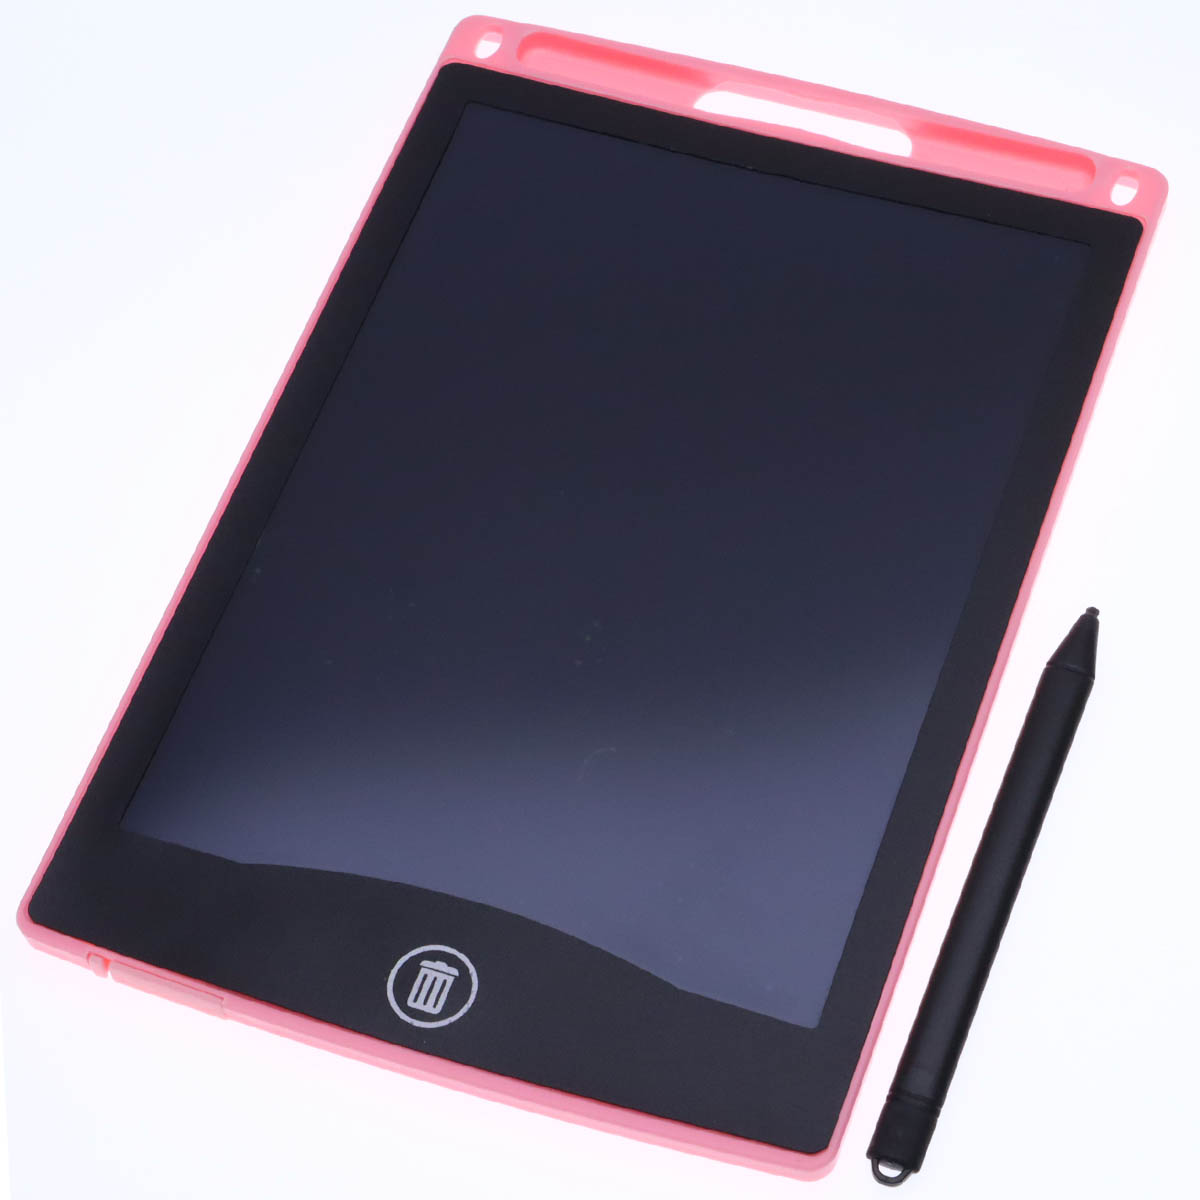 Графический планшет BAIBIAN с сенсорным цветным дисплеем для рисования, 8.5 дюймов, цвет розовый